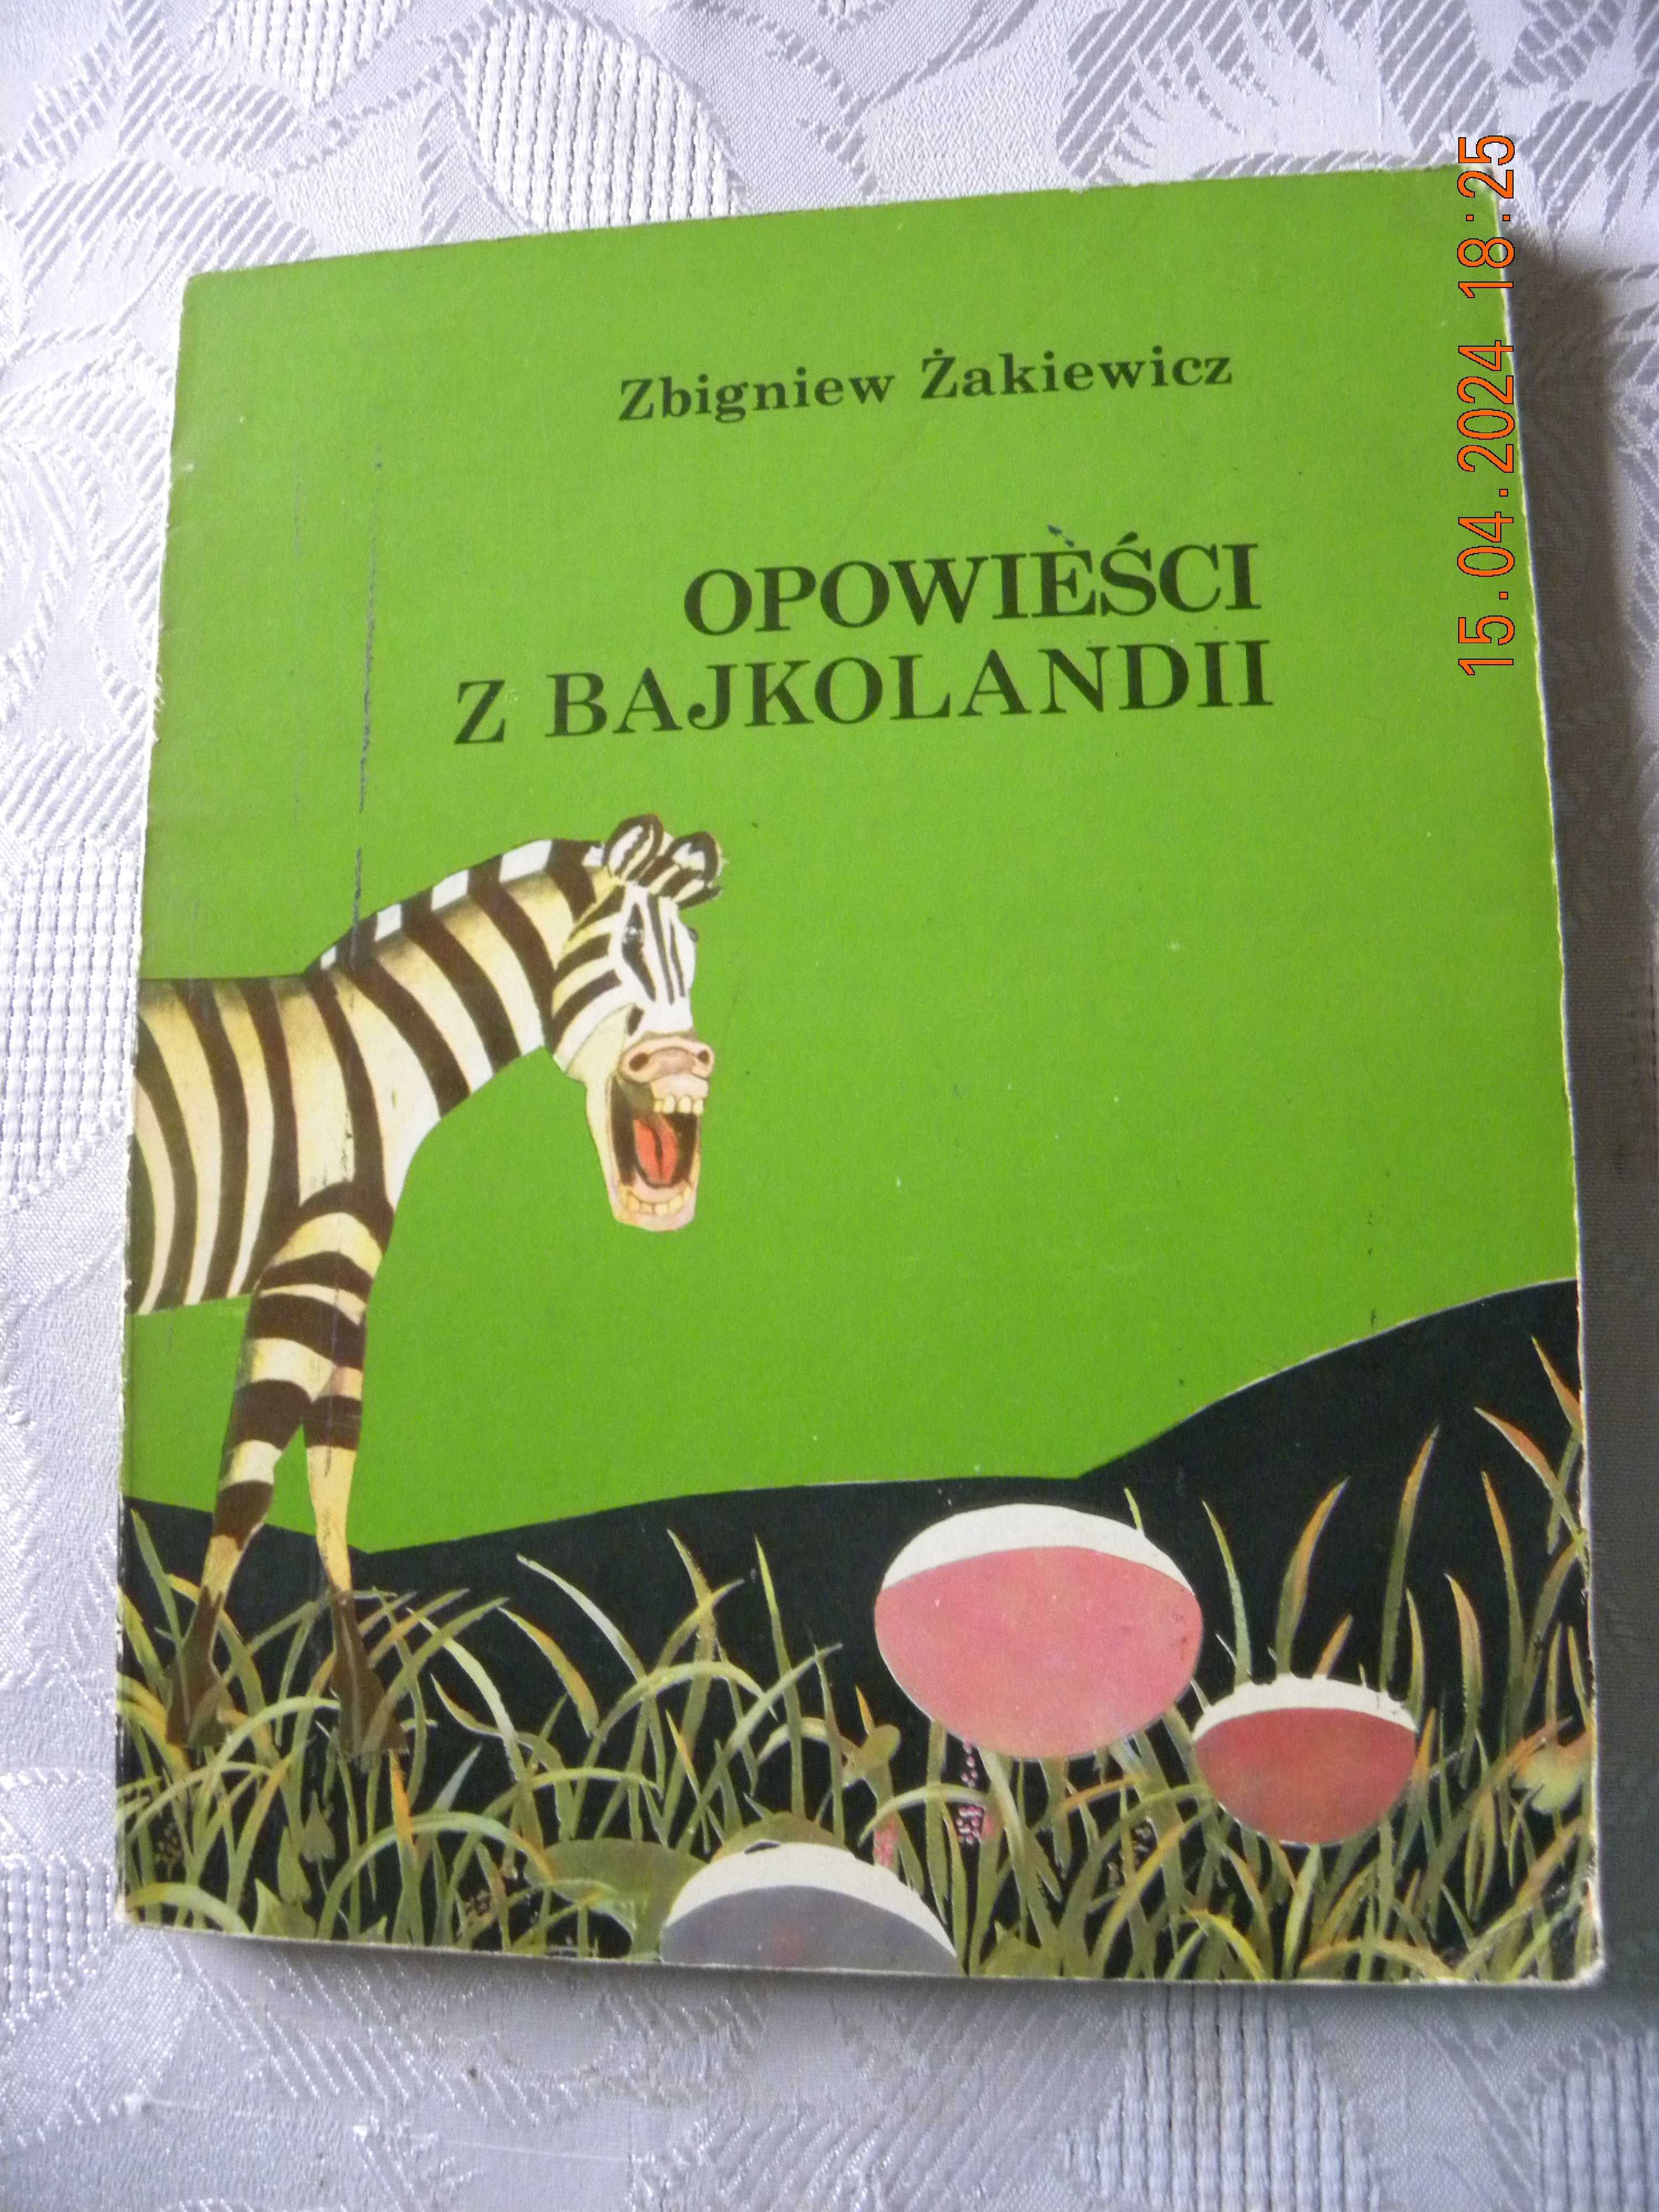 Żakiewicz Zbigniew. Opowieści z Bajkolandii